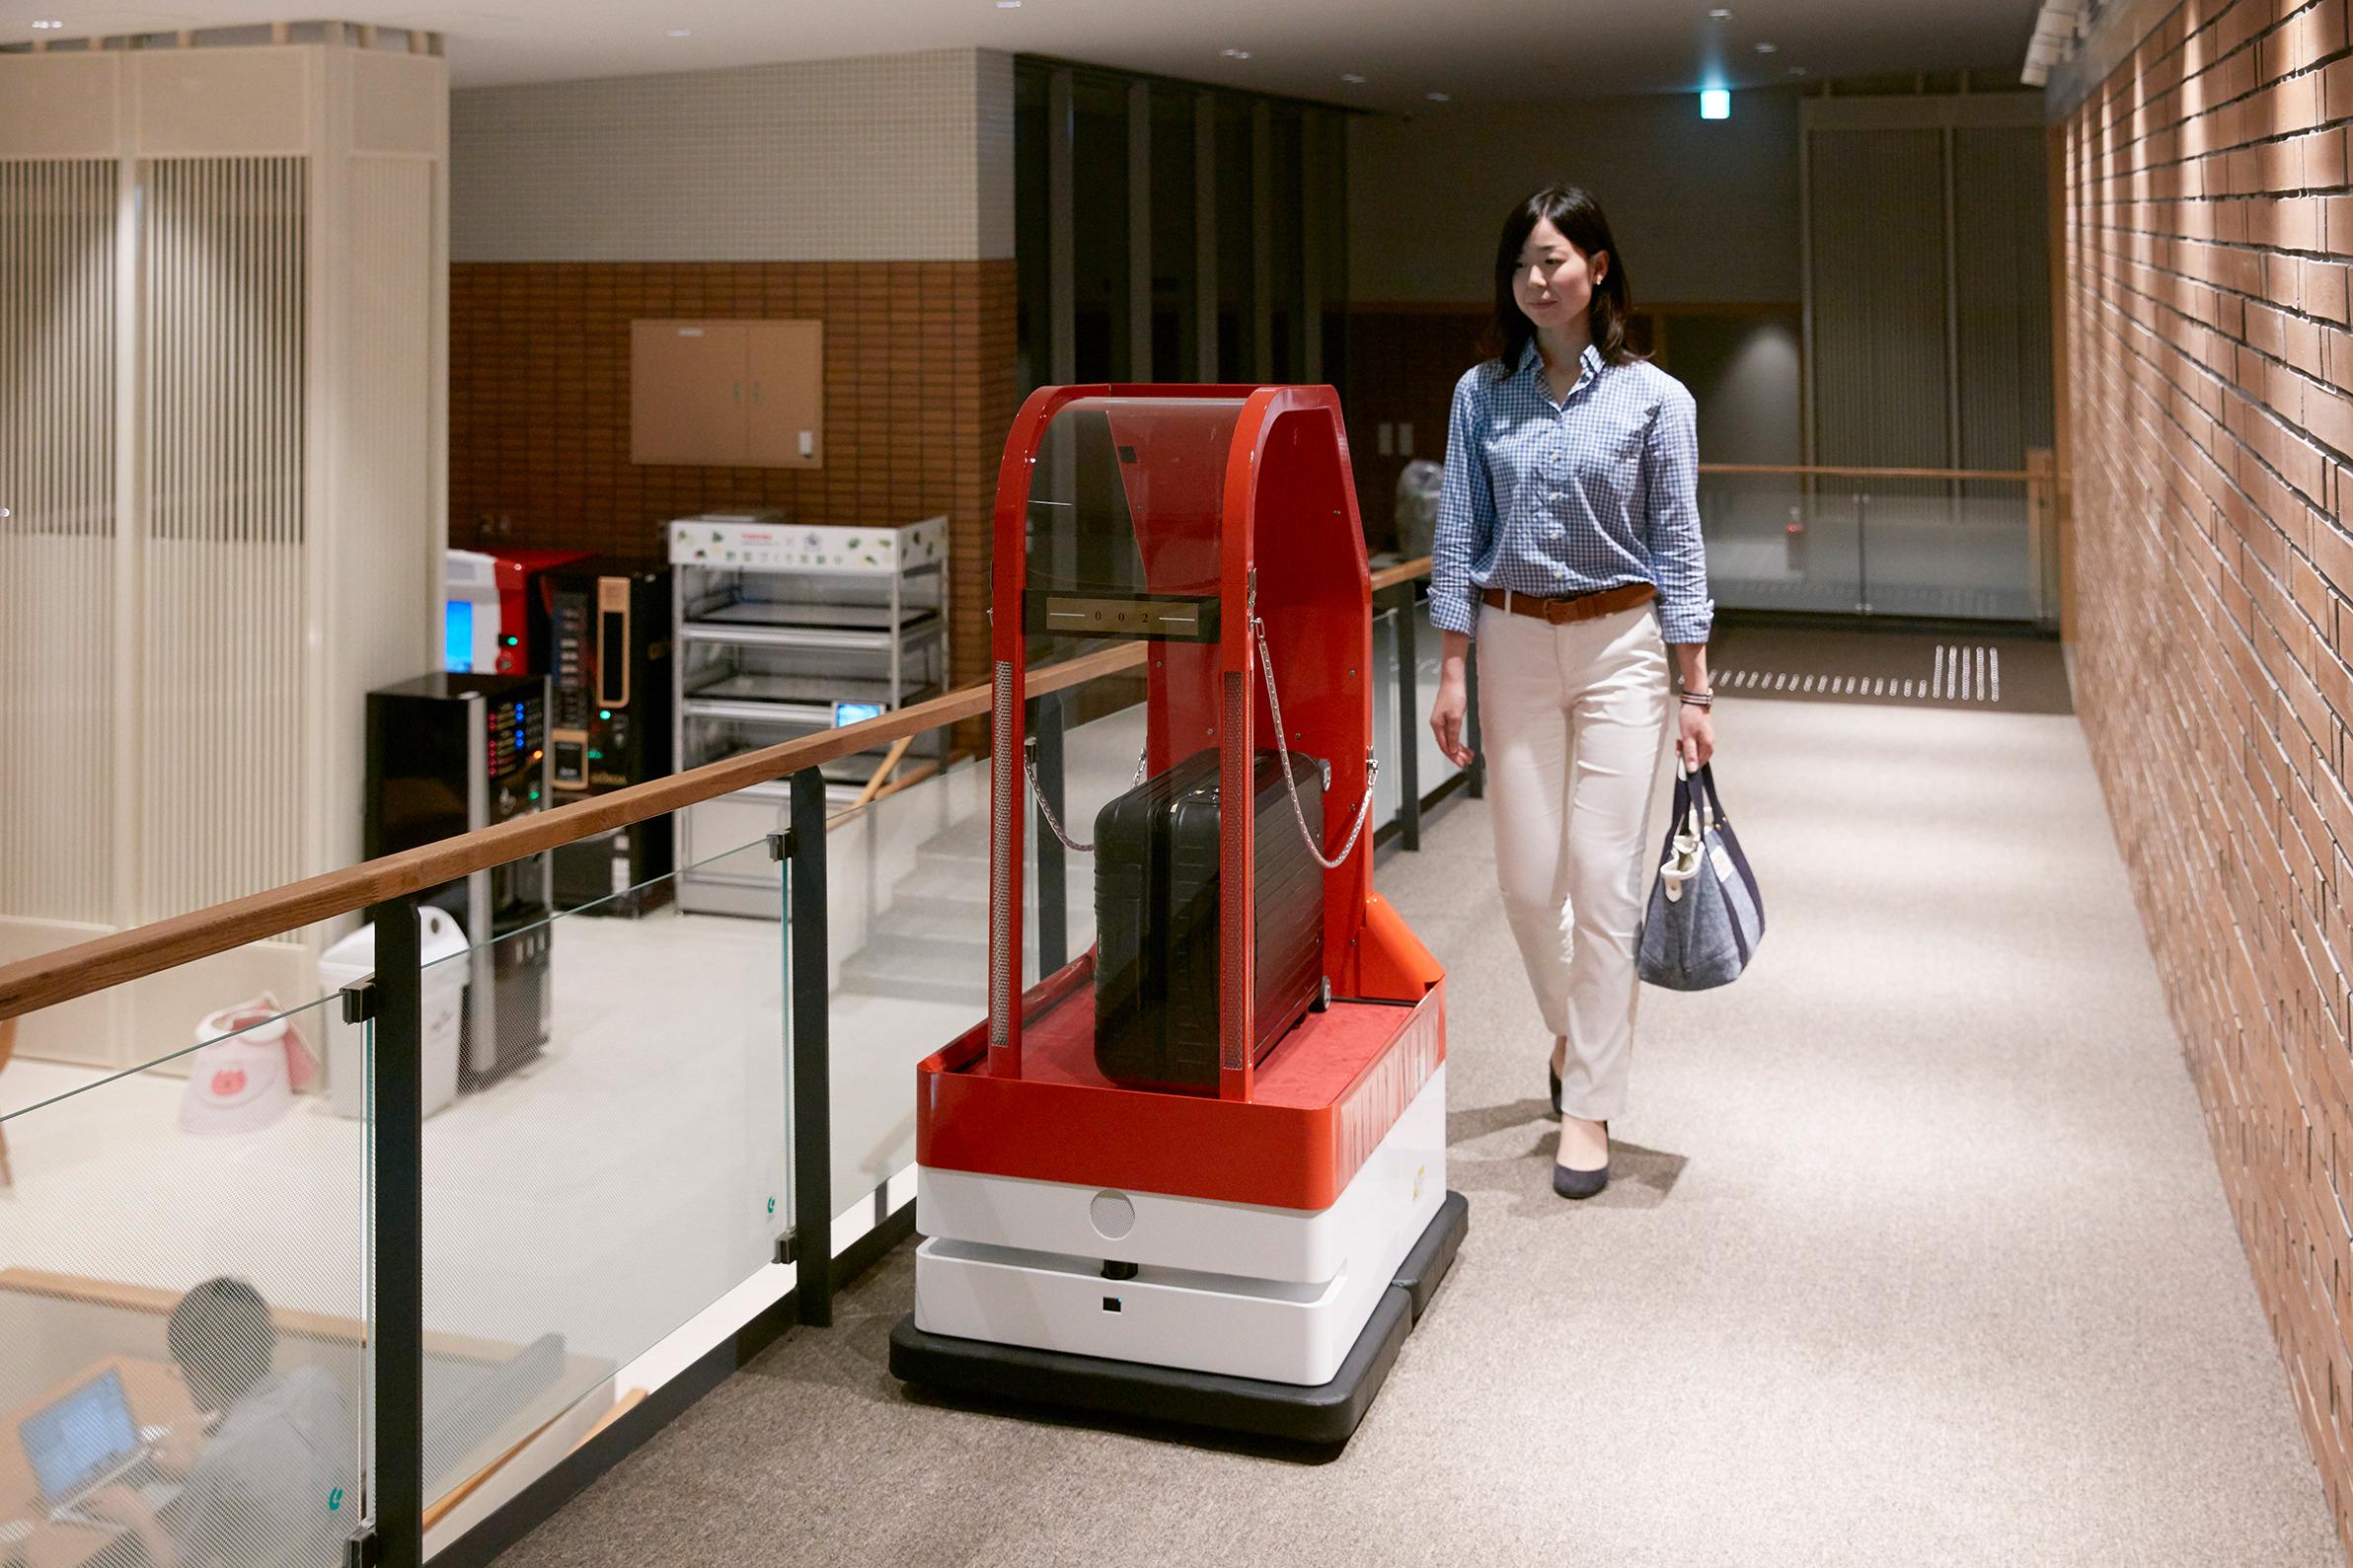 Hoteller bruker også roboter til å frakte bagasjen, blant annet.